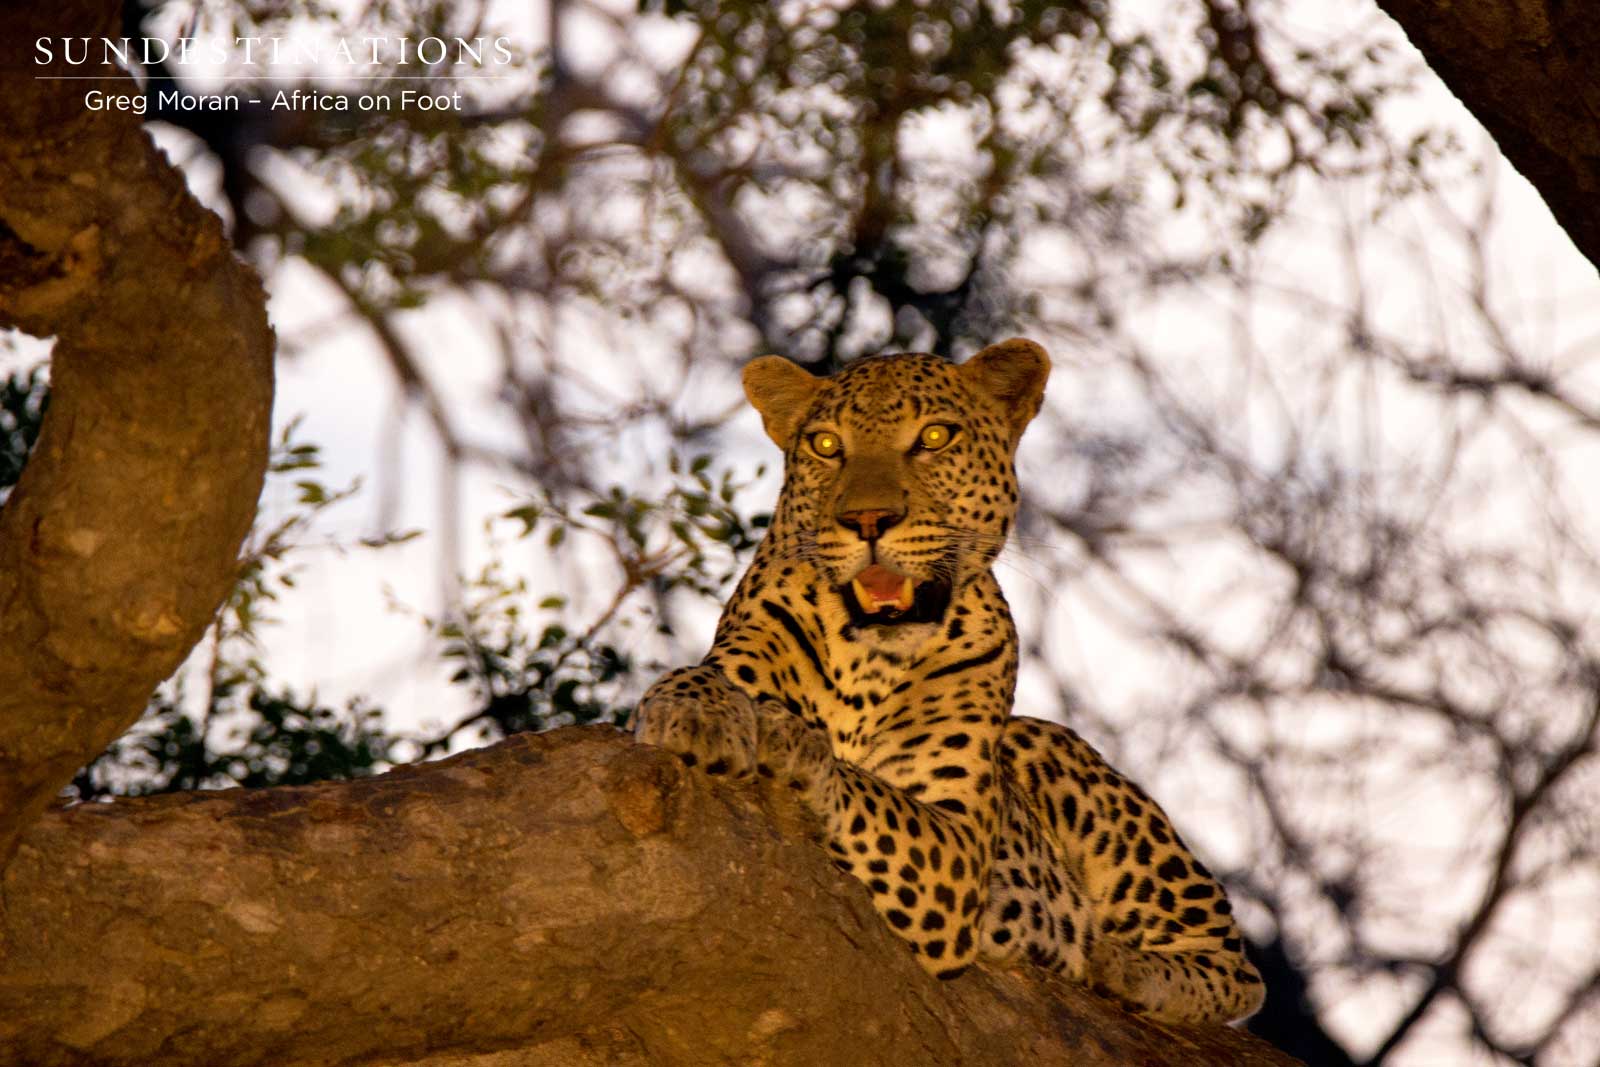 Klaserie Leopard at Africa on Foot